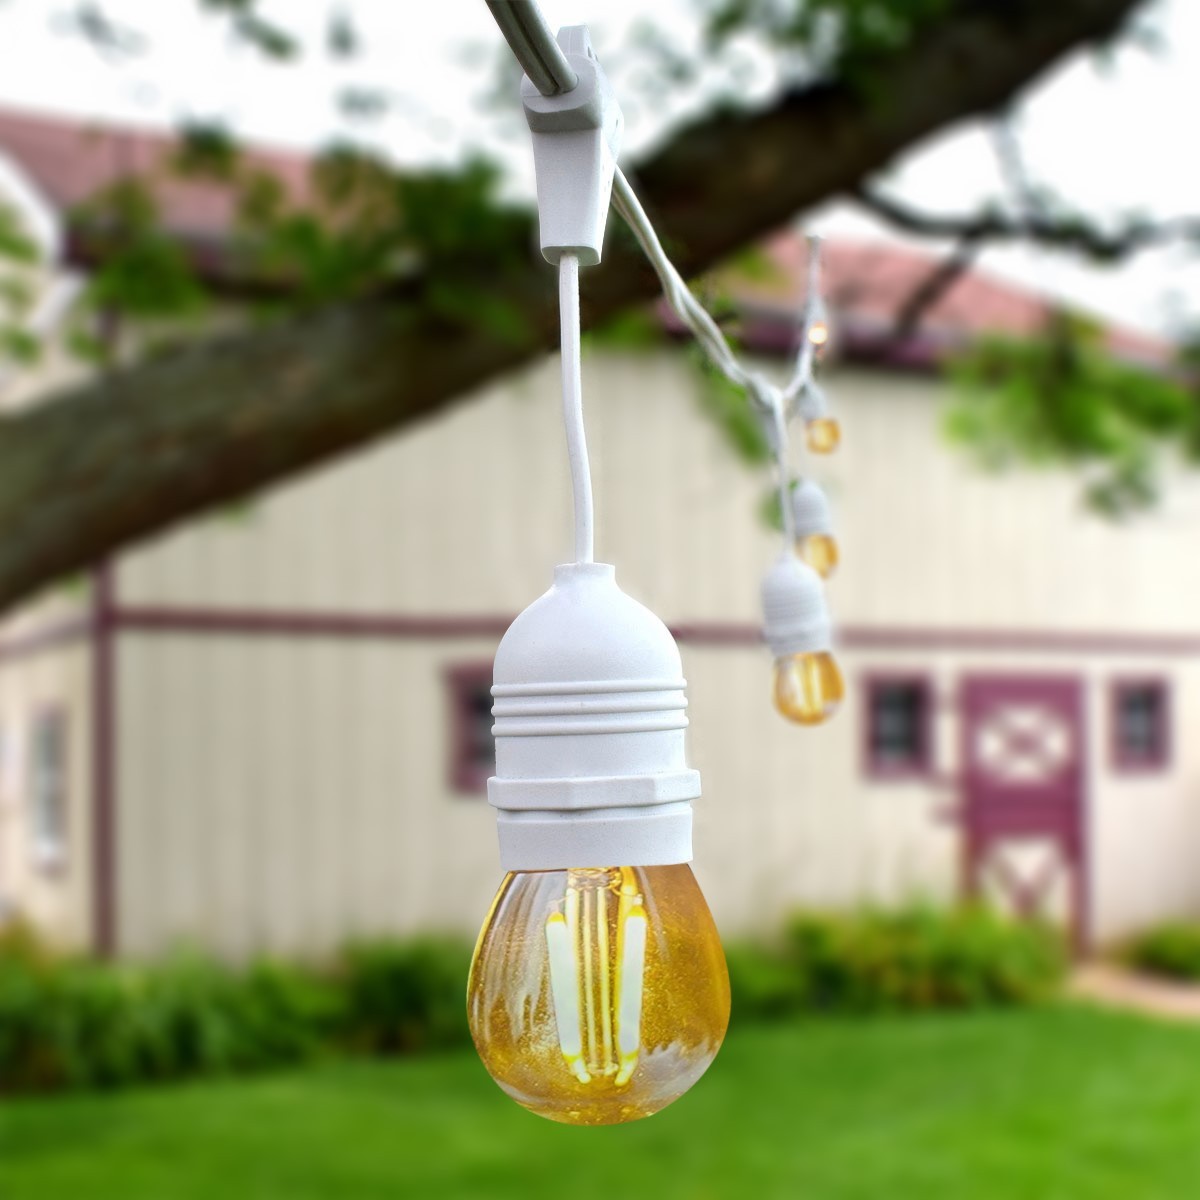 Metallisierte Lampenfassung Design für LED Lampen E27 - Duraled